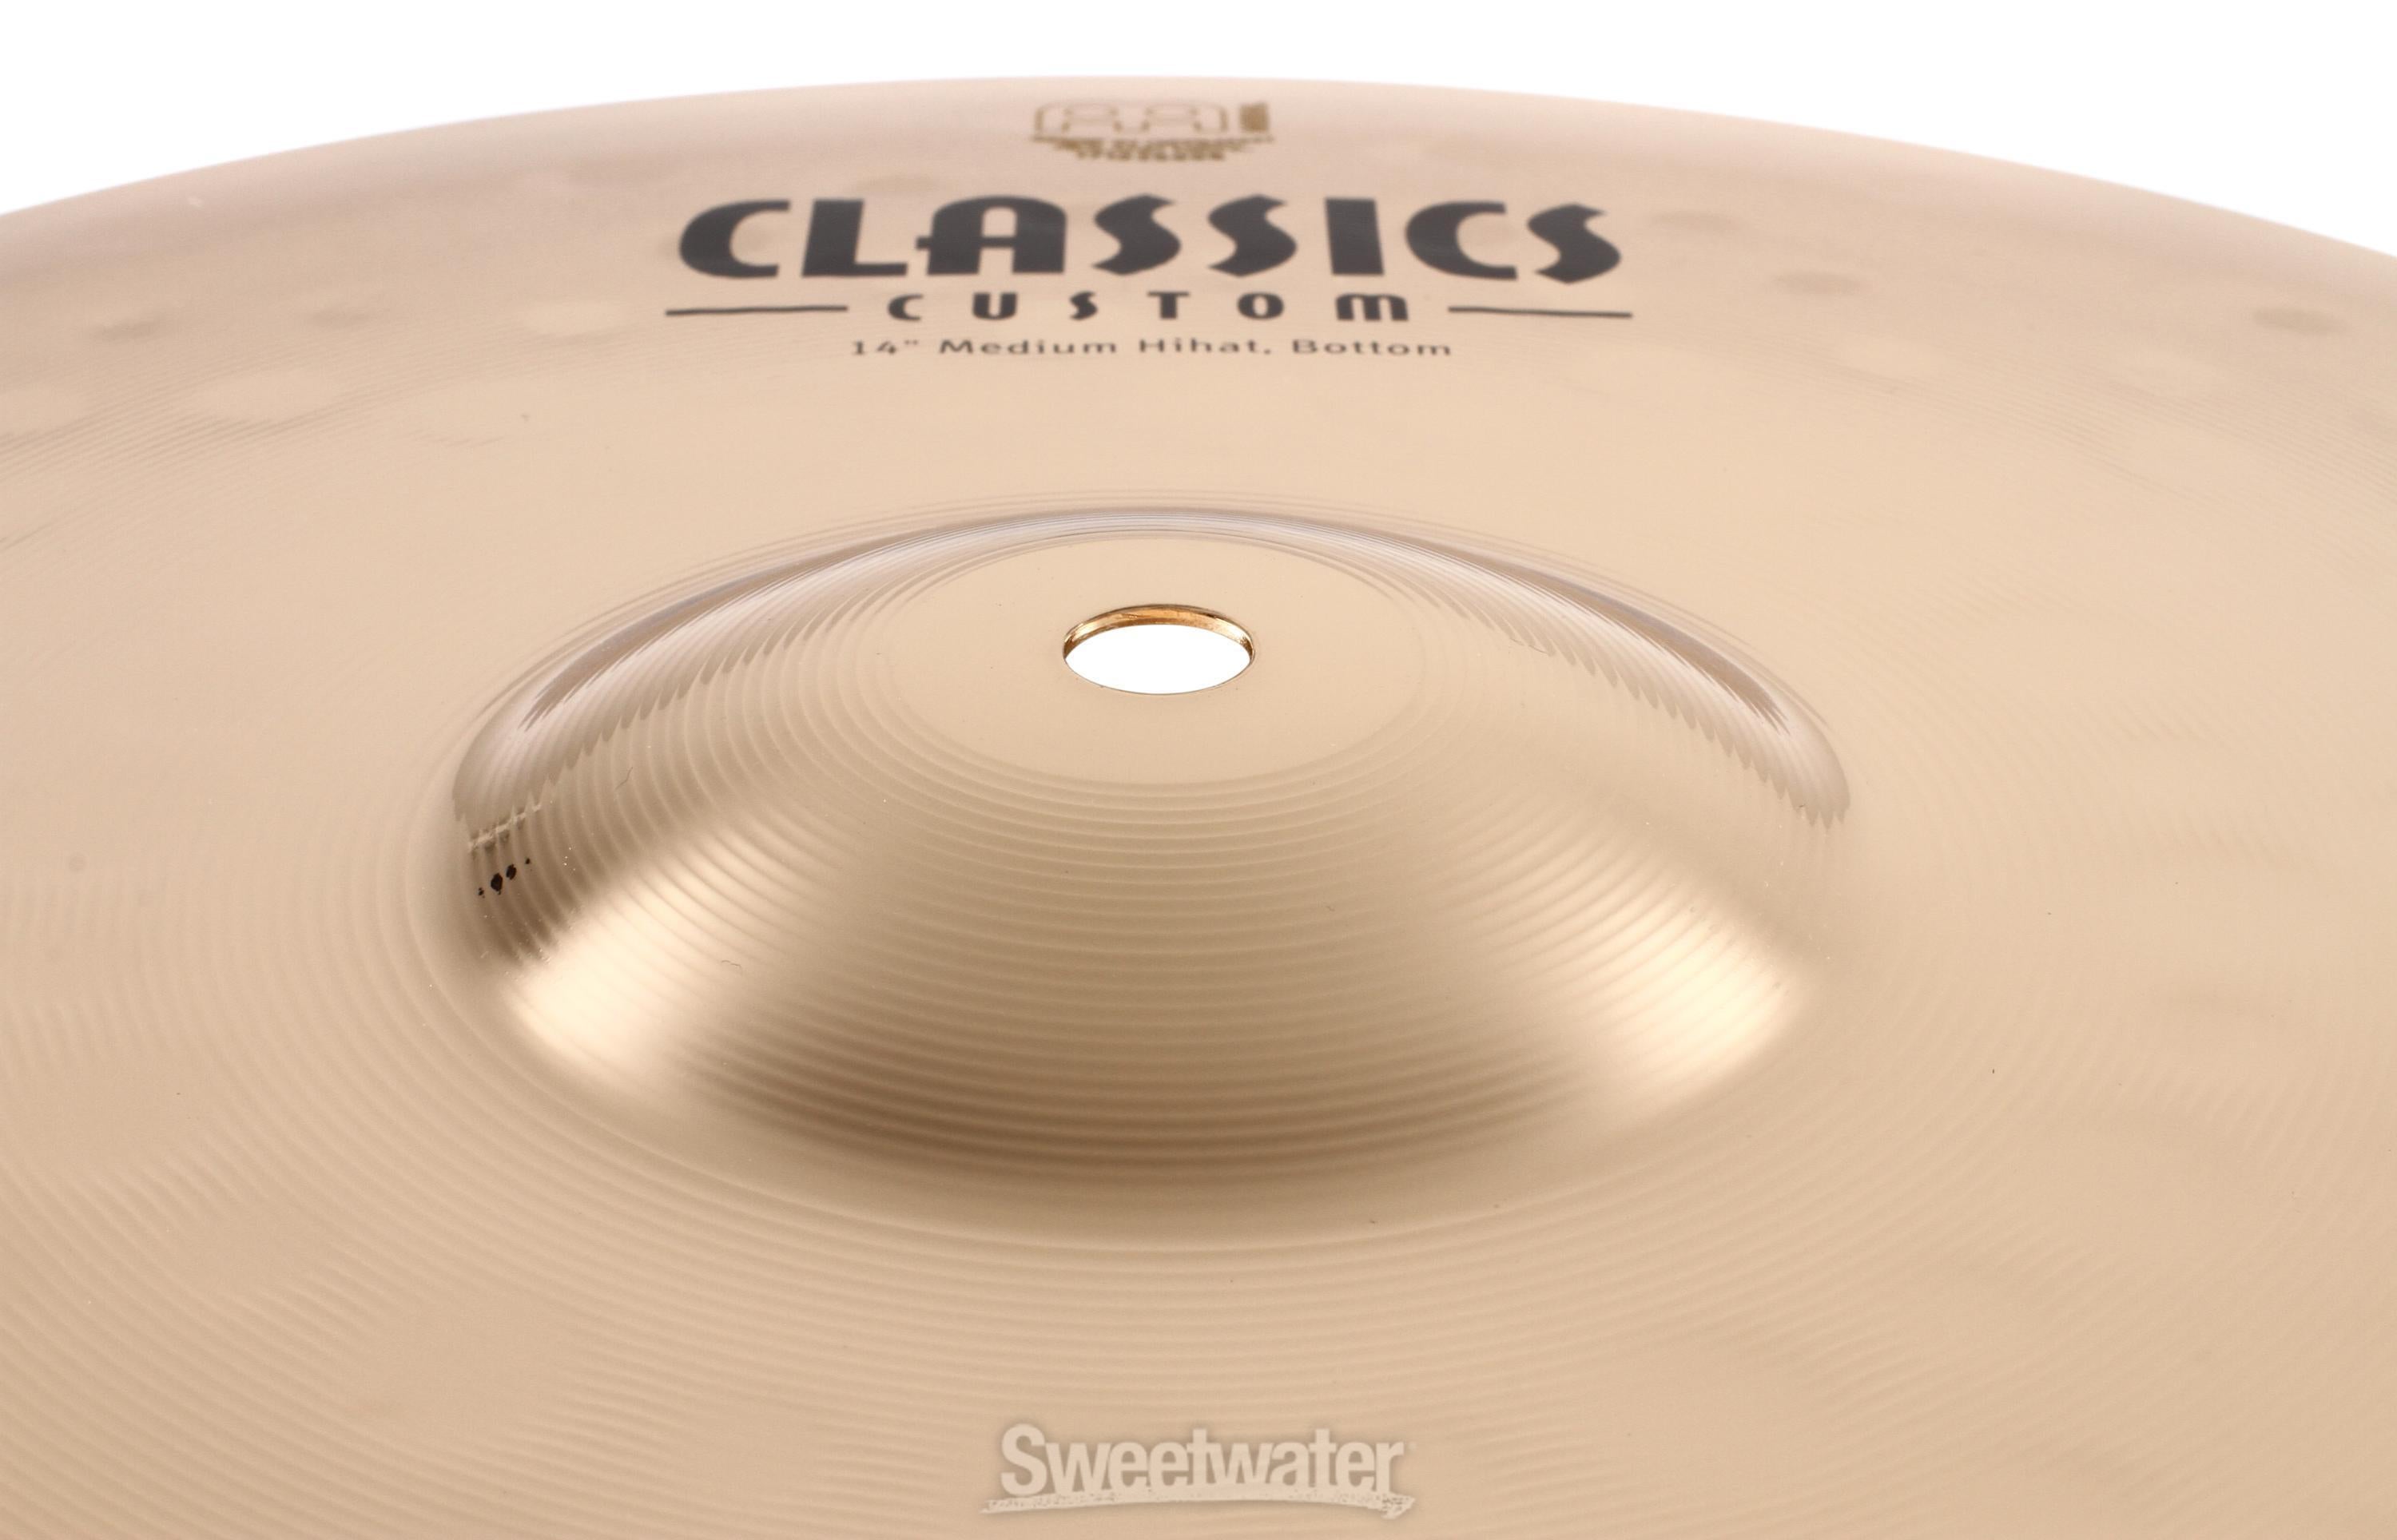 Meinl Cymbals 14 inch Classics Custom Medium Hi-hat Cymbals